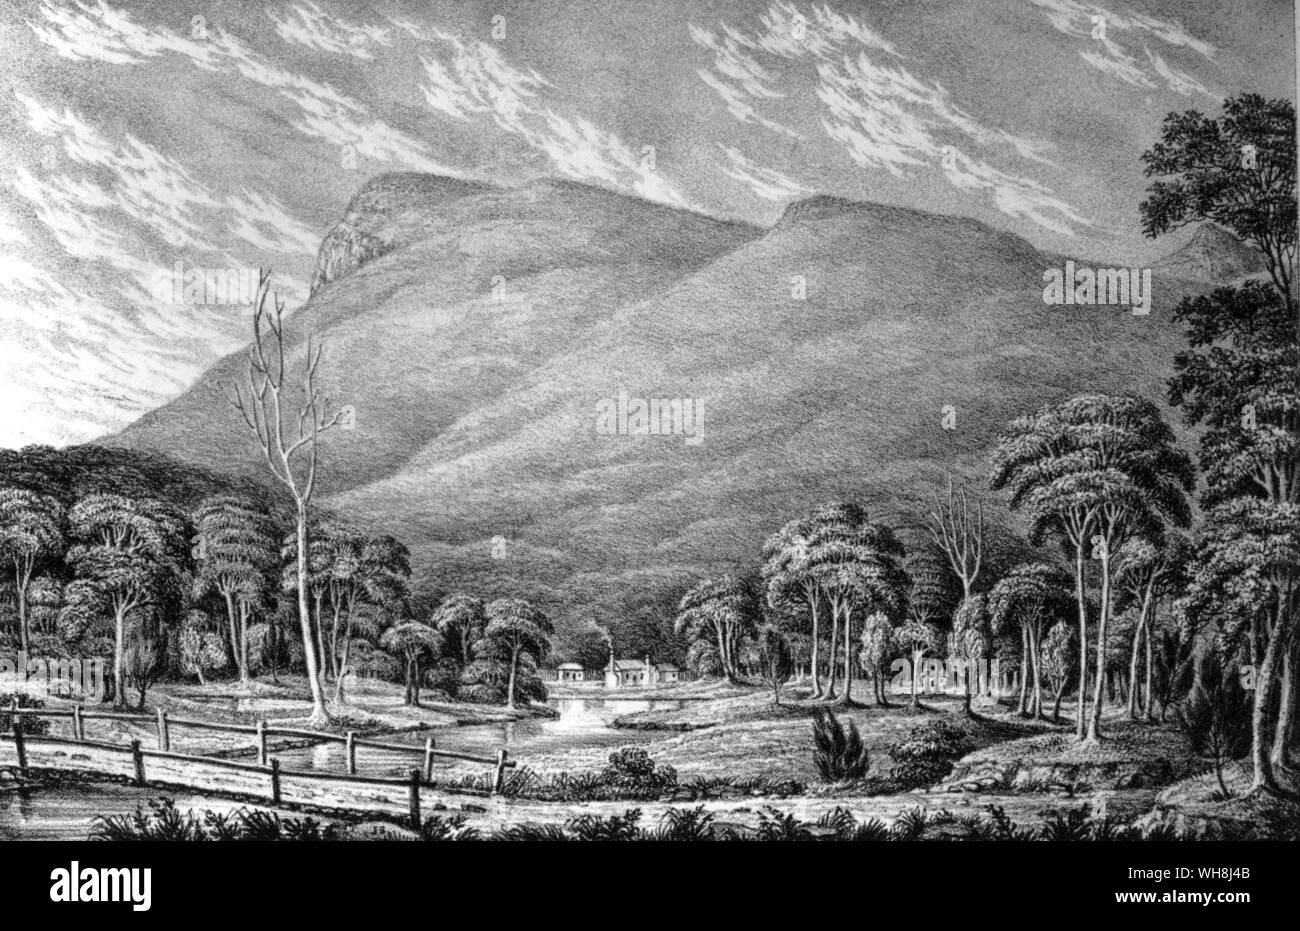 Monte Wellington, Tasmania, che Darwin è salito, ma che ha trovato di poco pittoresca bellezza. Complessivamente sia lui e FitzRoy rimasti delusi dal paesaggio della Nuova Zelanda e Australia. Darwin e la Beagle da Alan Moorhead, pagina 235. Foto Stock